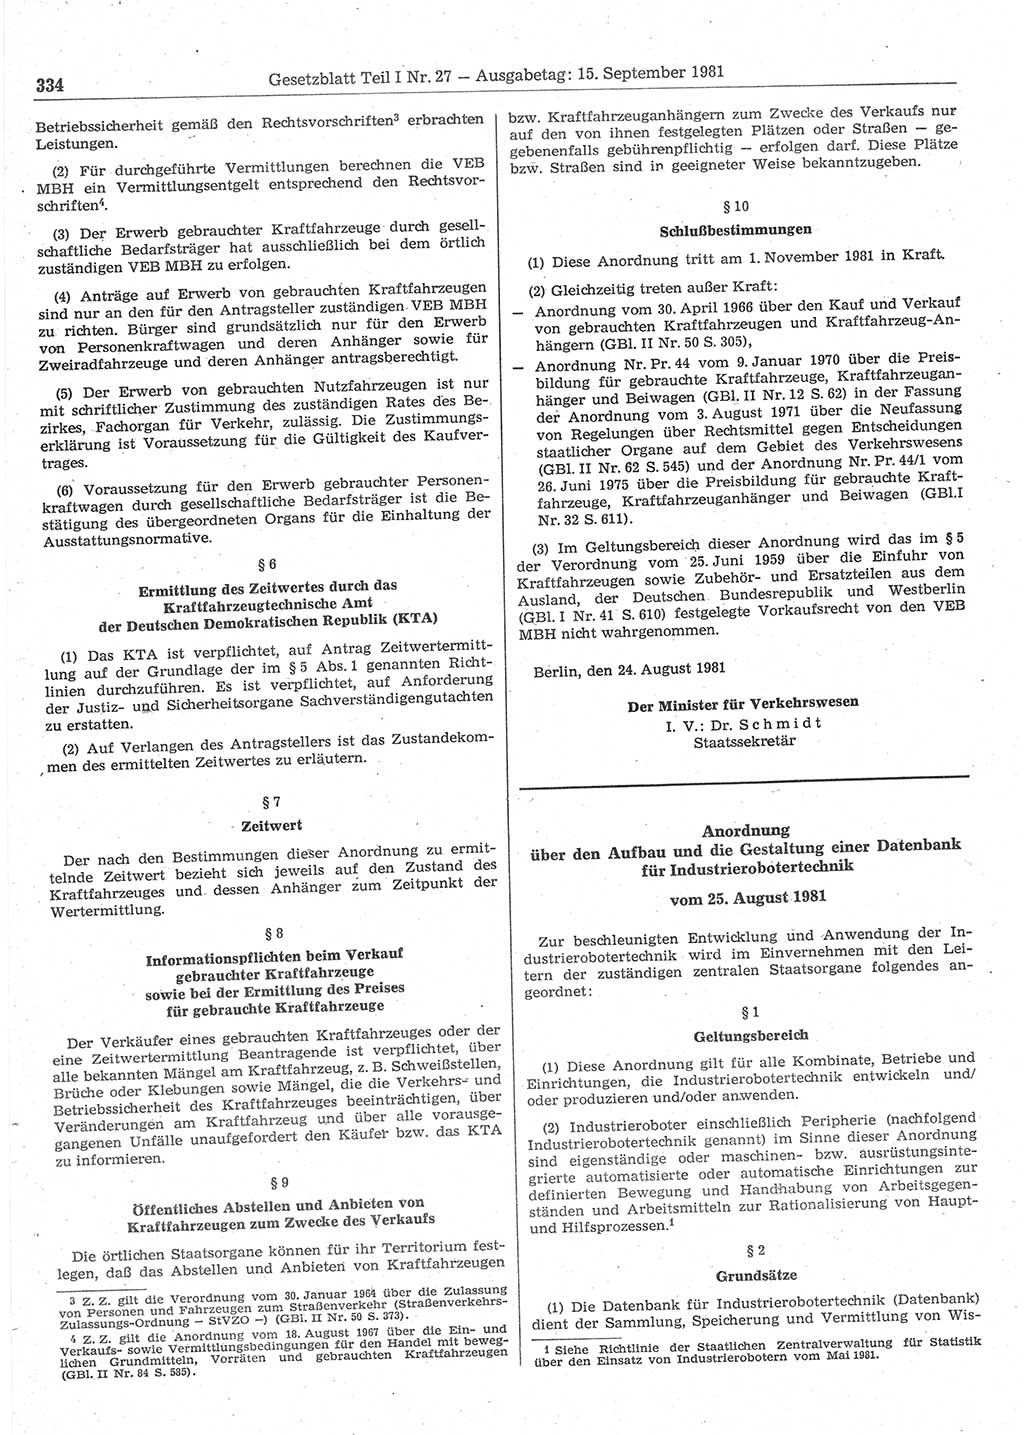 Gesetzblatt (GBl.) der Deutschen Demokratischen Republik (DDR) Teil Ⅰ 1981, Seite 334 (GBl. DDR Ⅰ 1981, S. 334)